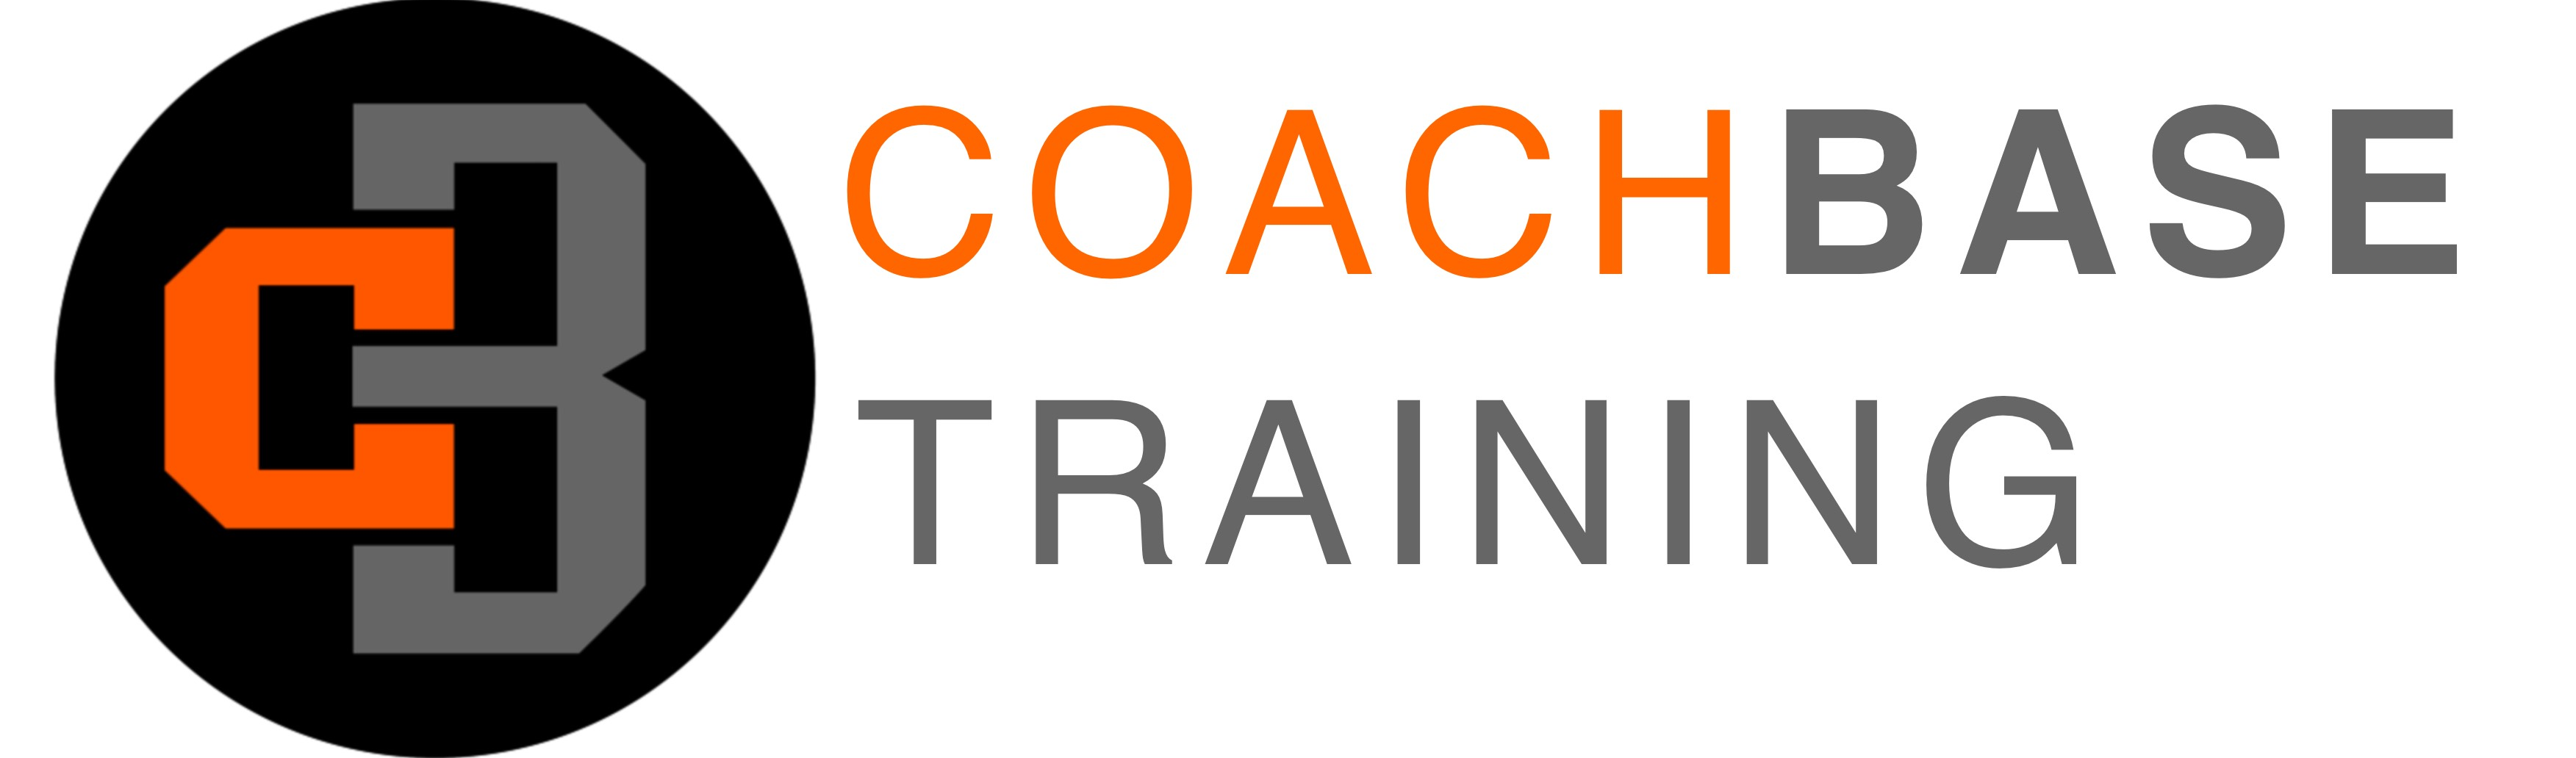 Coachbase Training